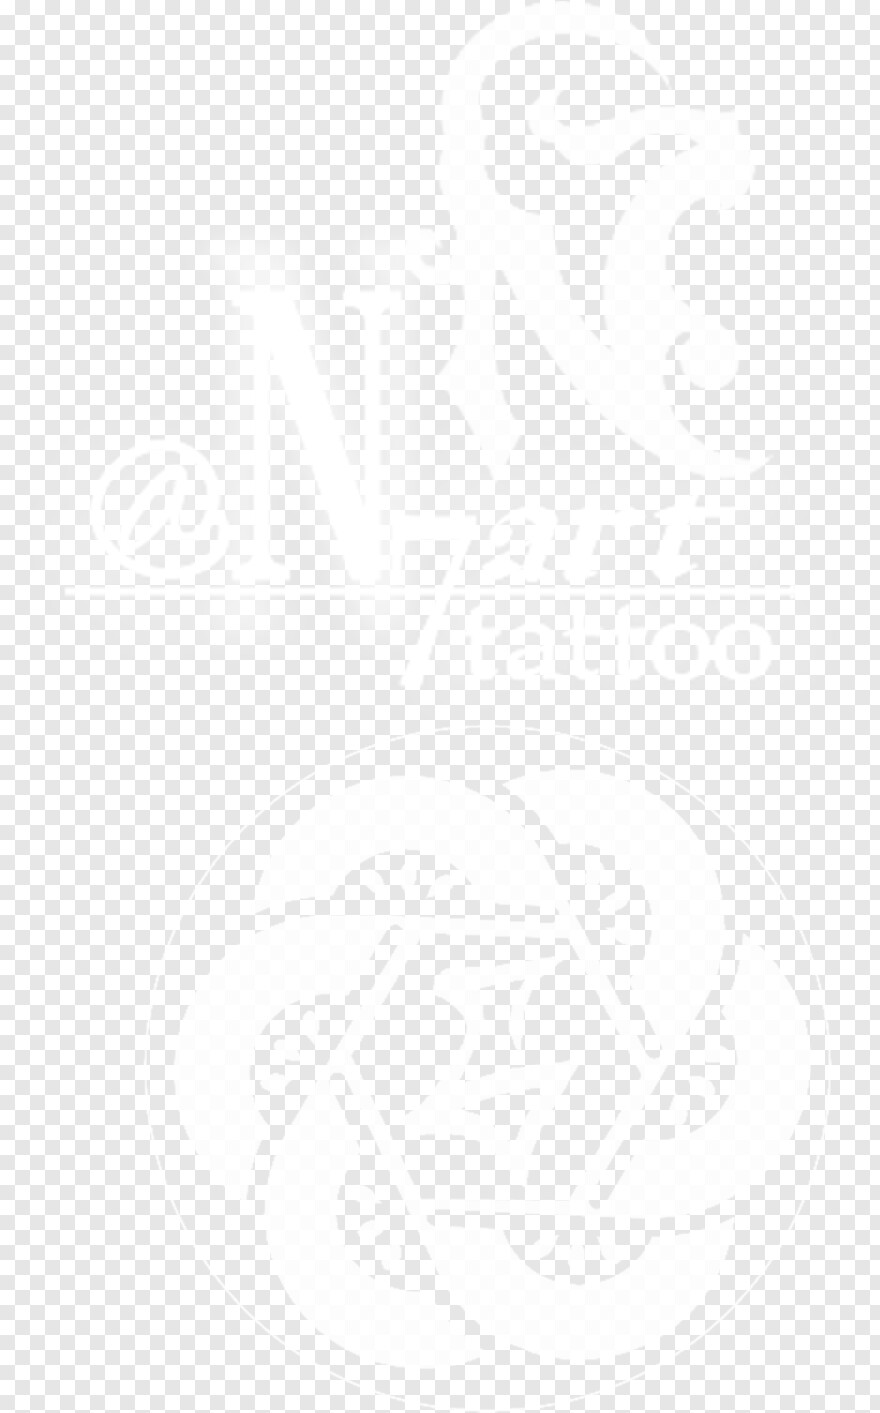 n7-logo # 605584